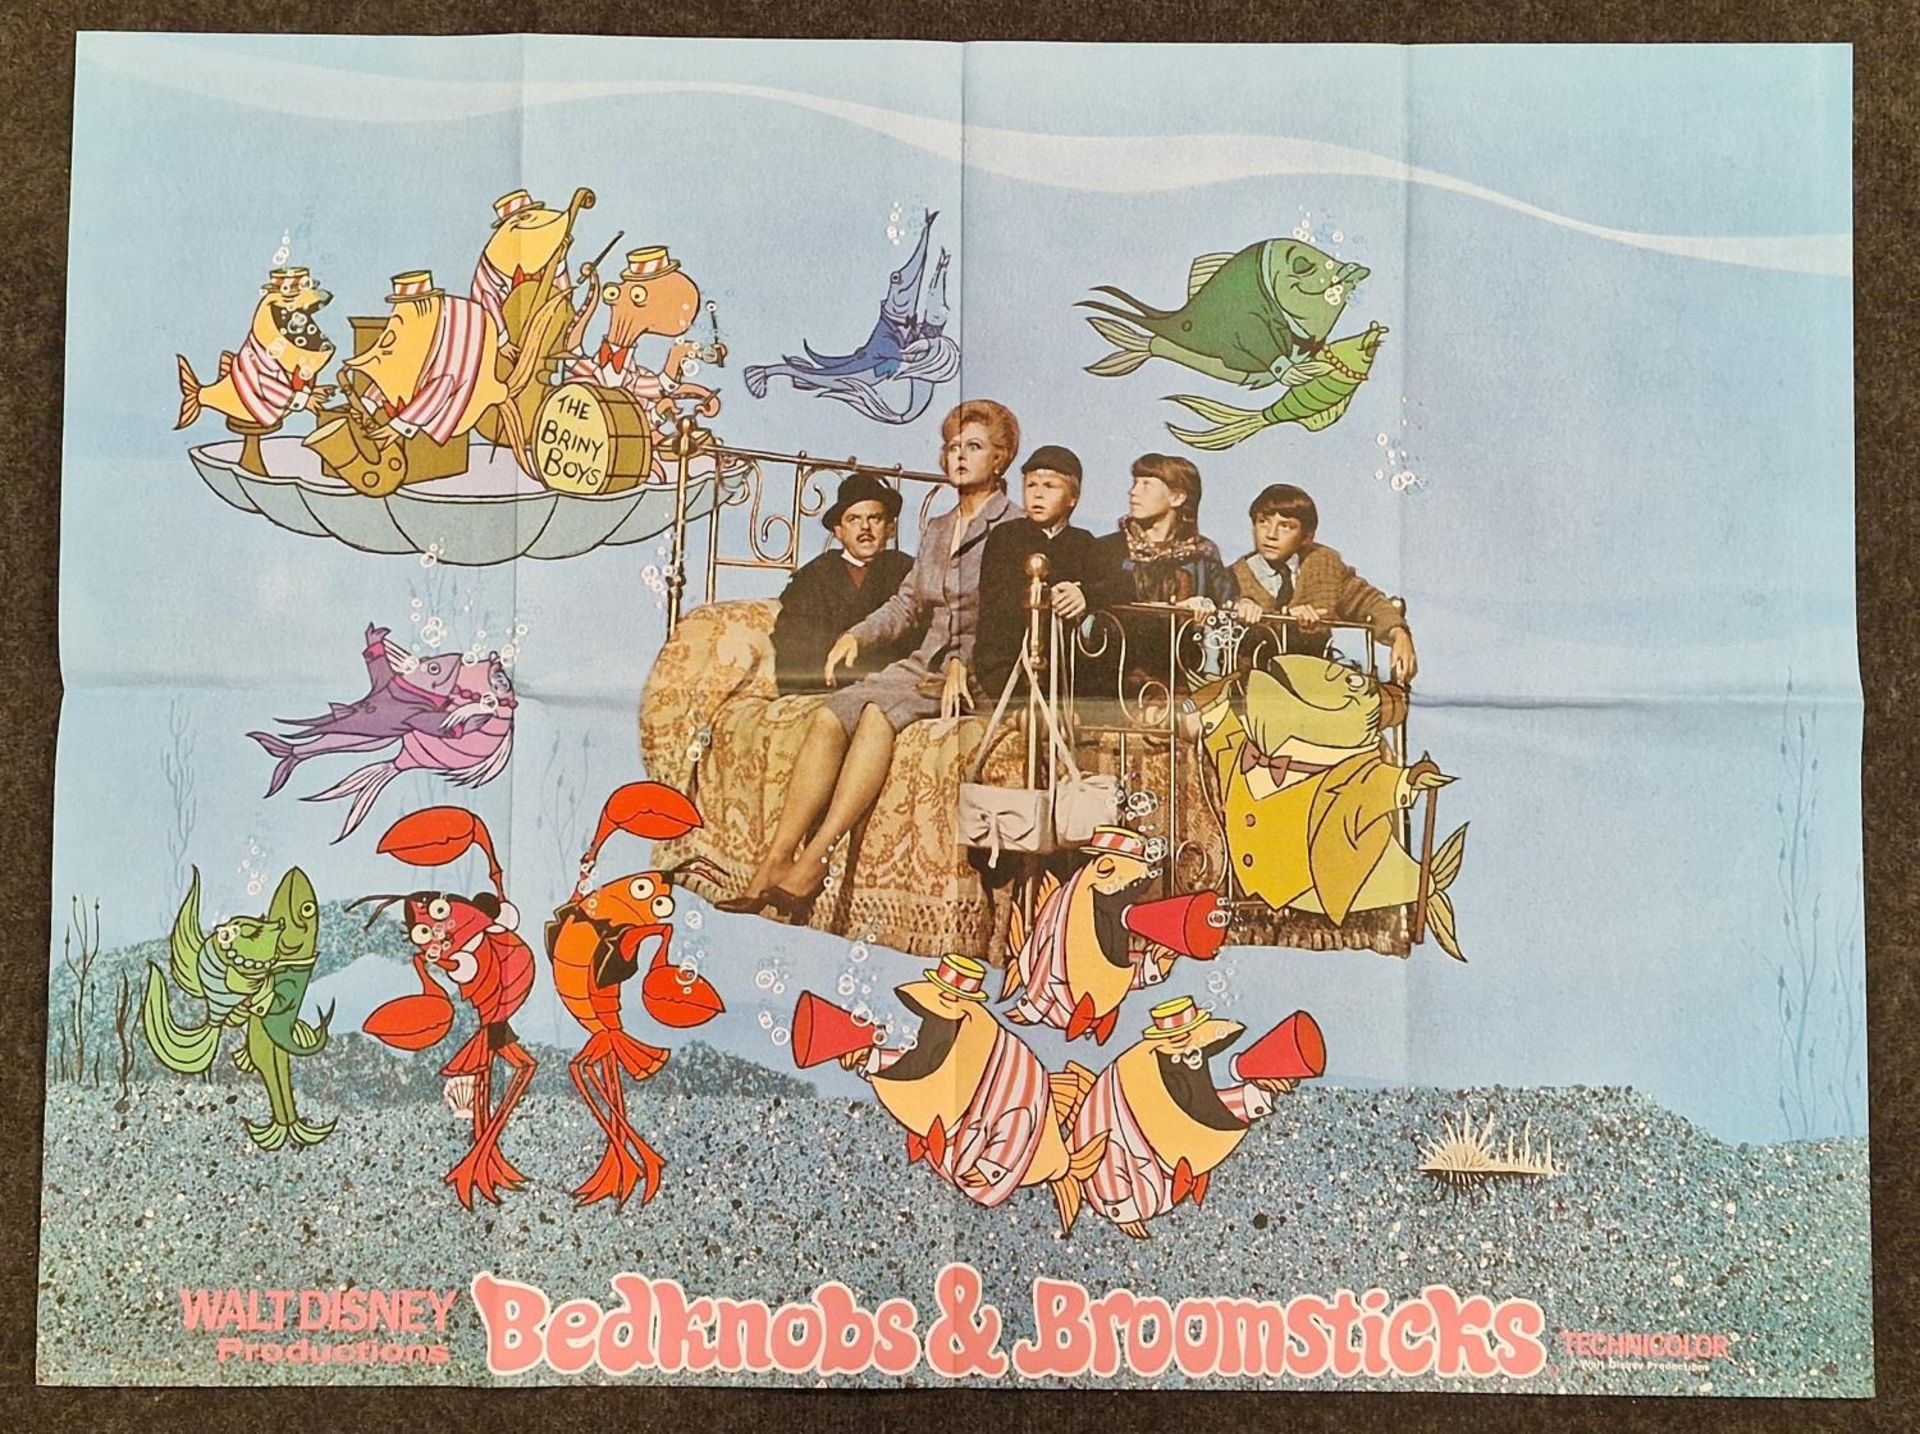 "Bedknobs & Broomsticks" original vintage Walt Disney folded quad film poster 1971 starring Angela